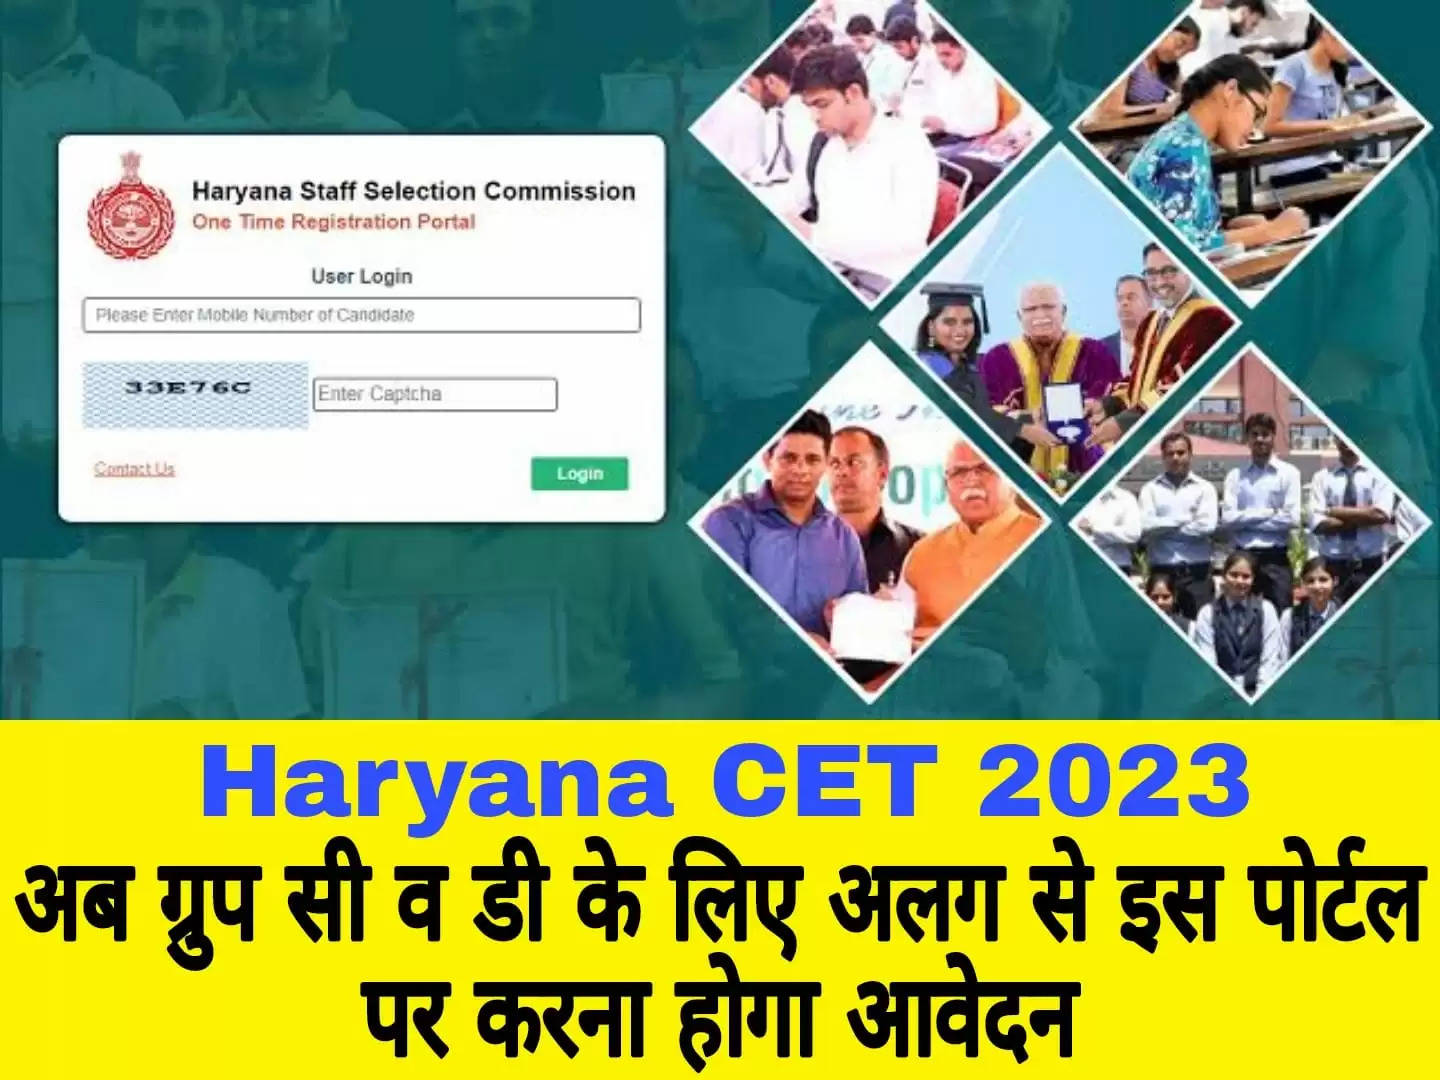 Haryana Cet : हरियाणा सीईटी ग्रुप सी व डी के लिए बनेंगे अलग पोर्टल, भर्ती में होगी देरी जानिए पूरी डिटेल्स 